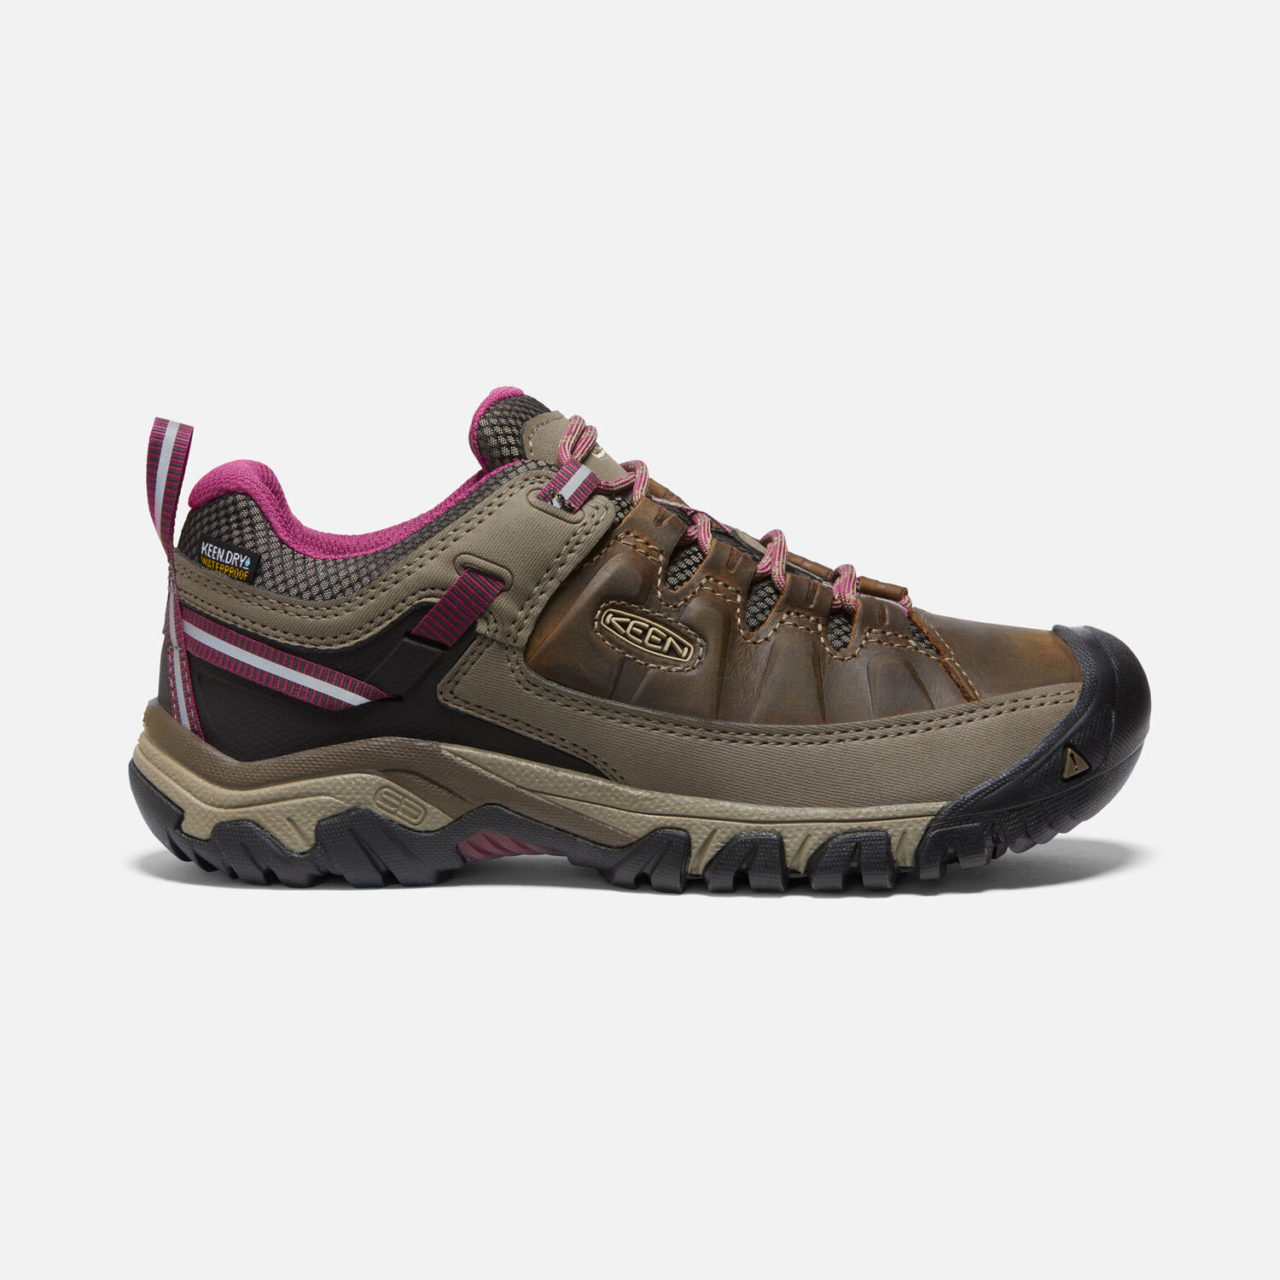 Keen Women's hiking shoe